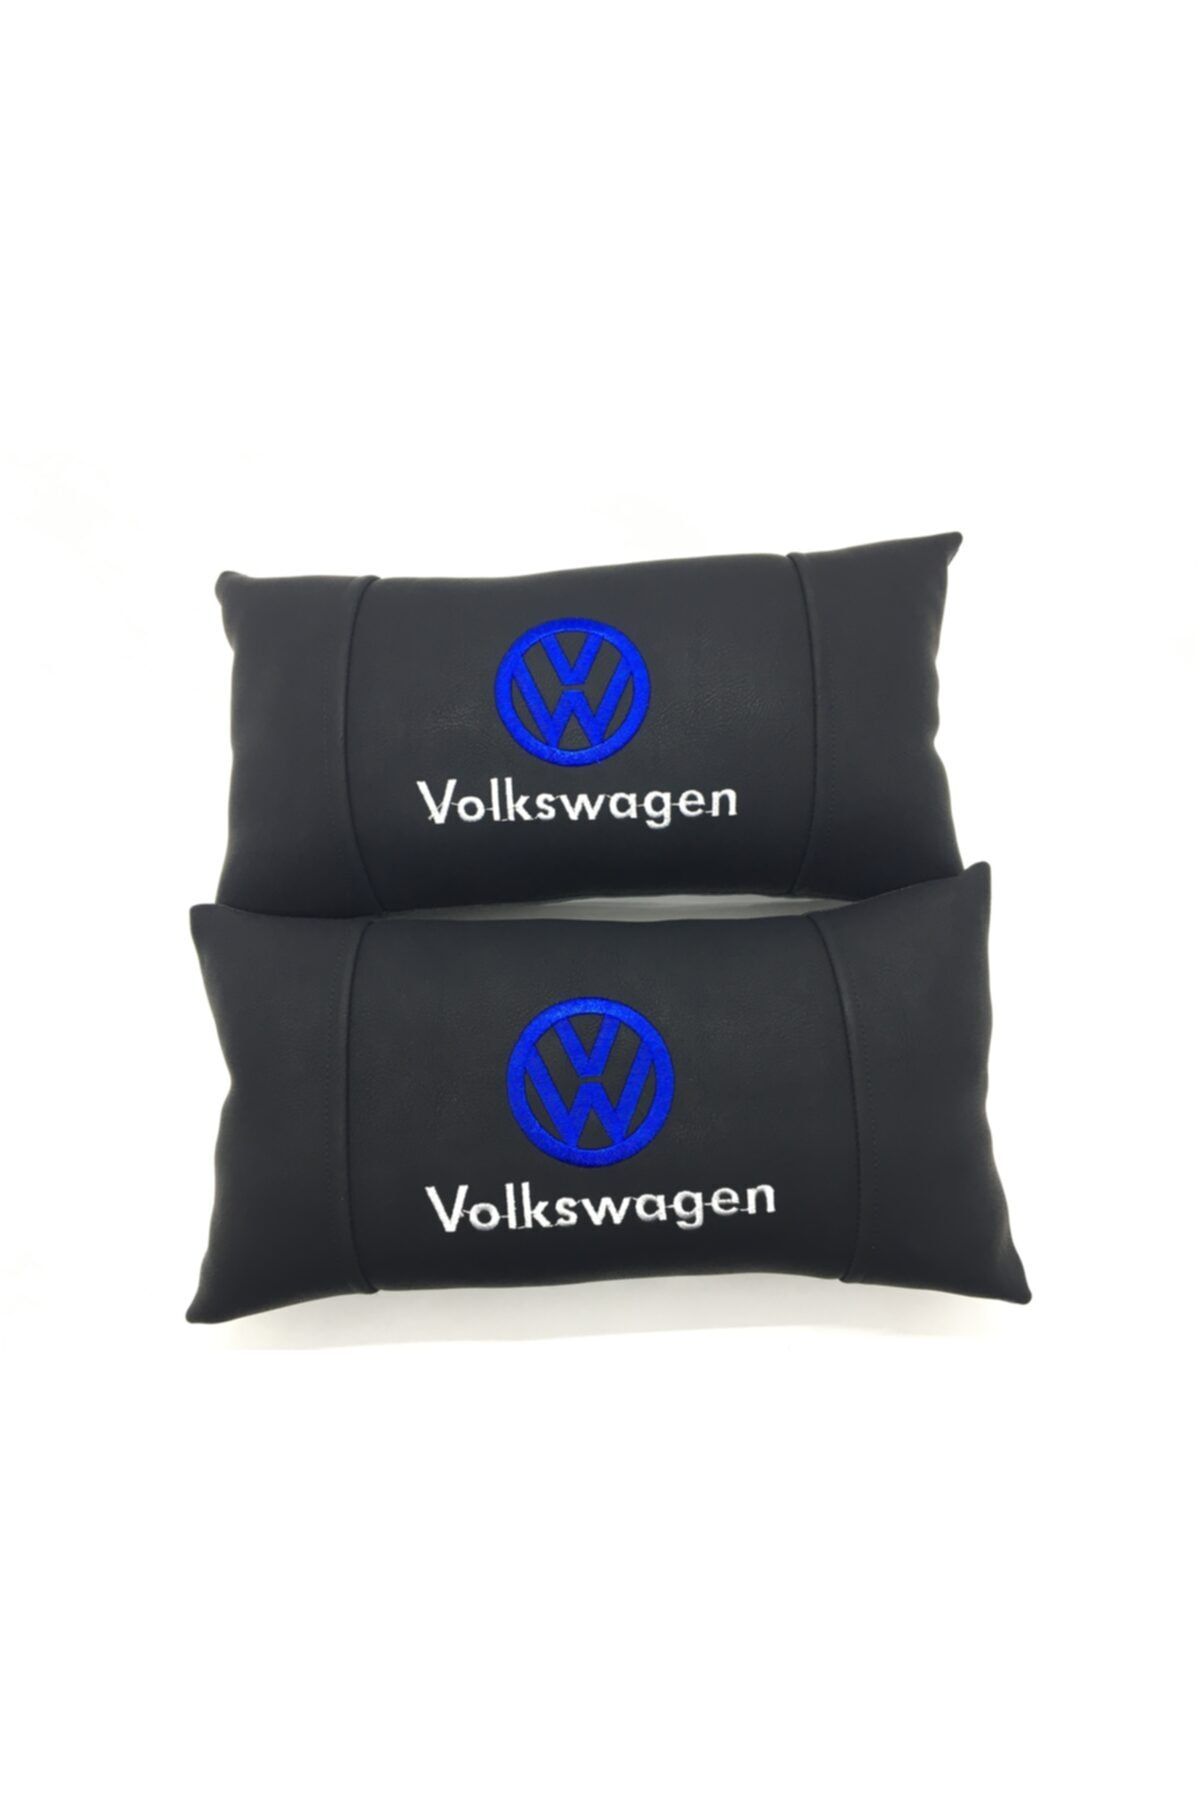 CEM OTOMOTİV Volkswagen Uyumlu Deri Ortopedik Araç Boyun Yastığı'2 Adet